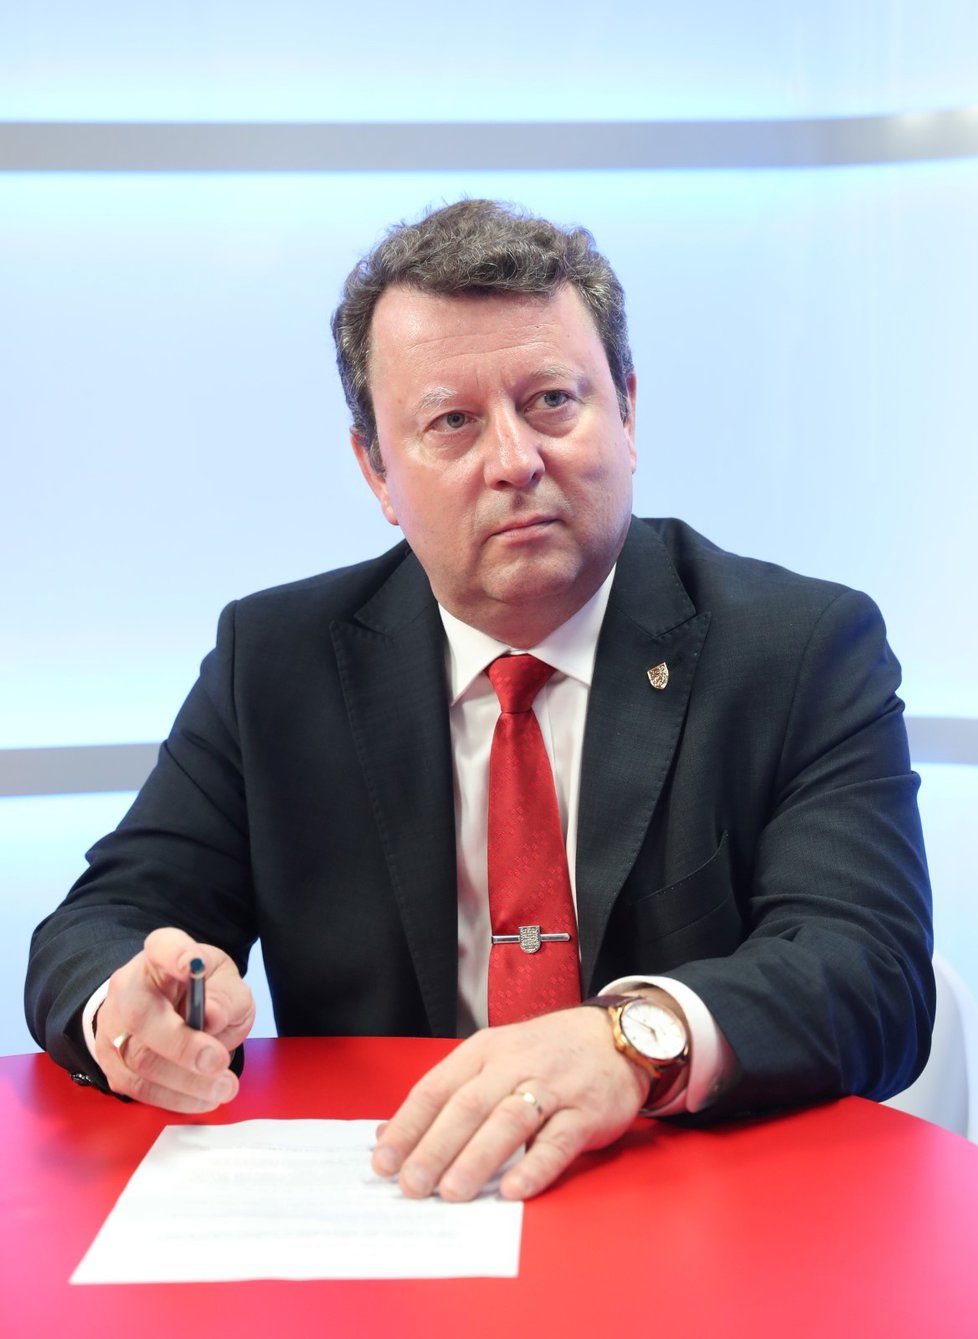 Ministr kultury Antonín Staněk (ČSSD) byl hostem pořadu Epicentrum dne 29. 4. 2019.